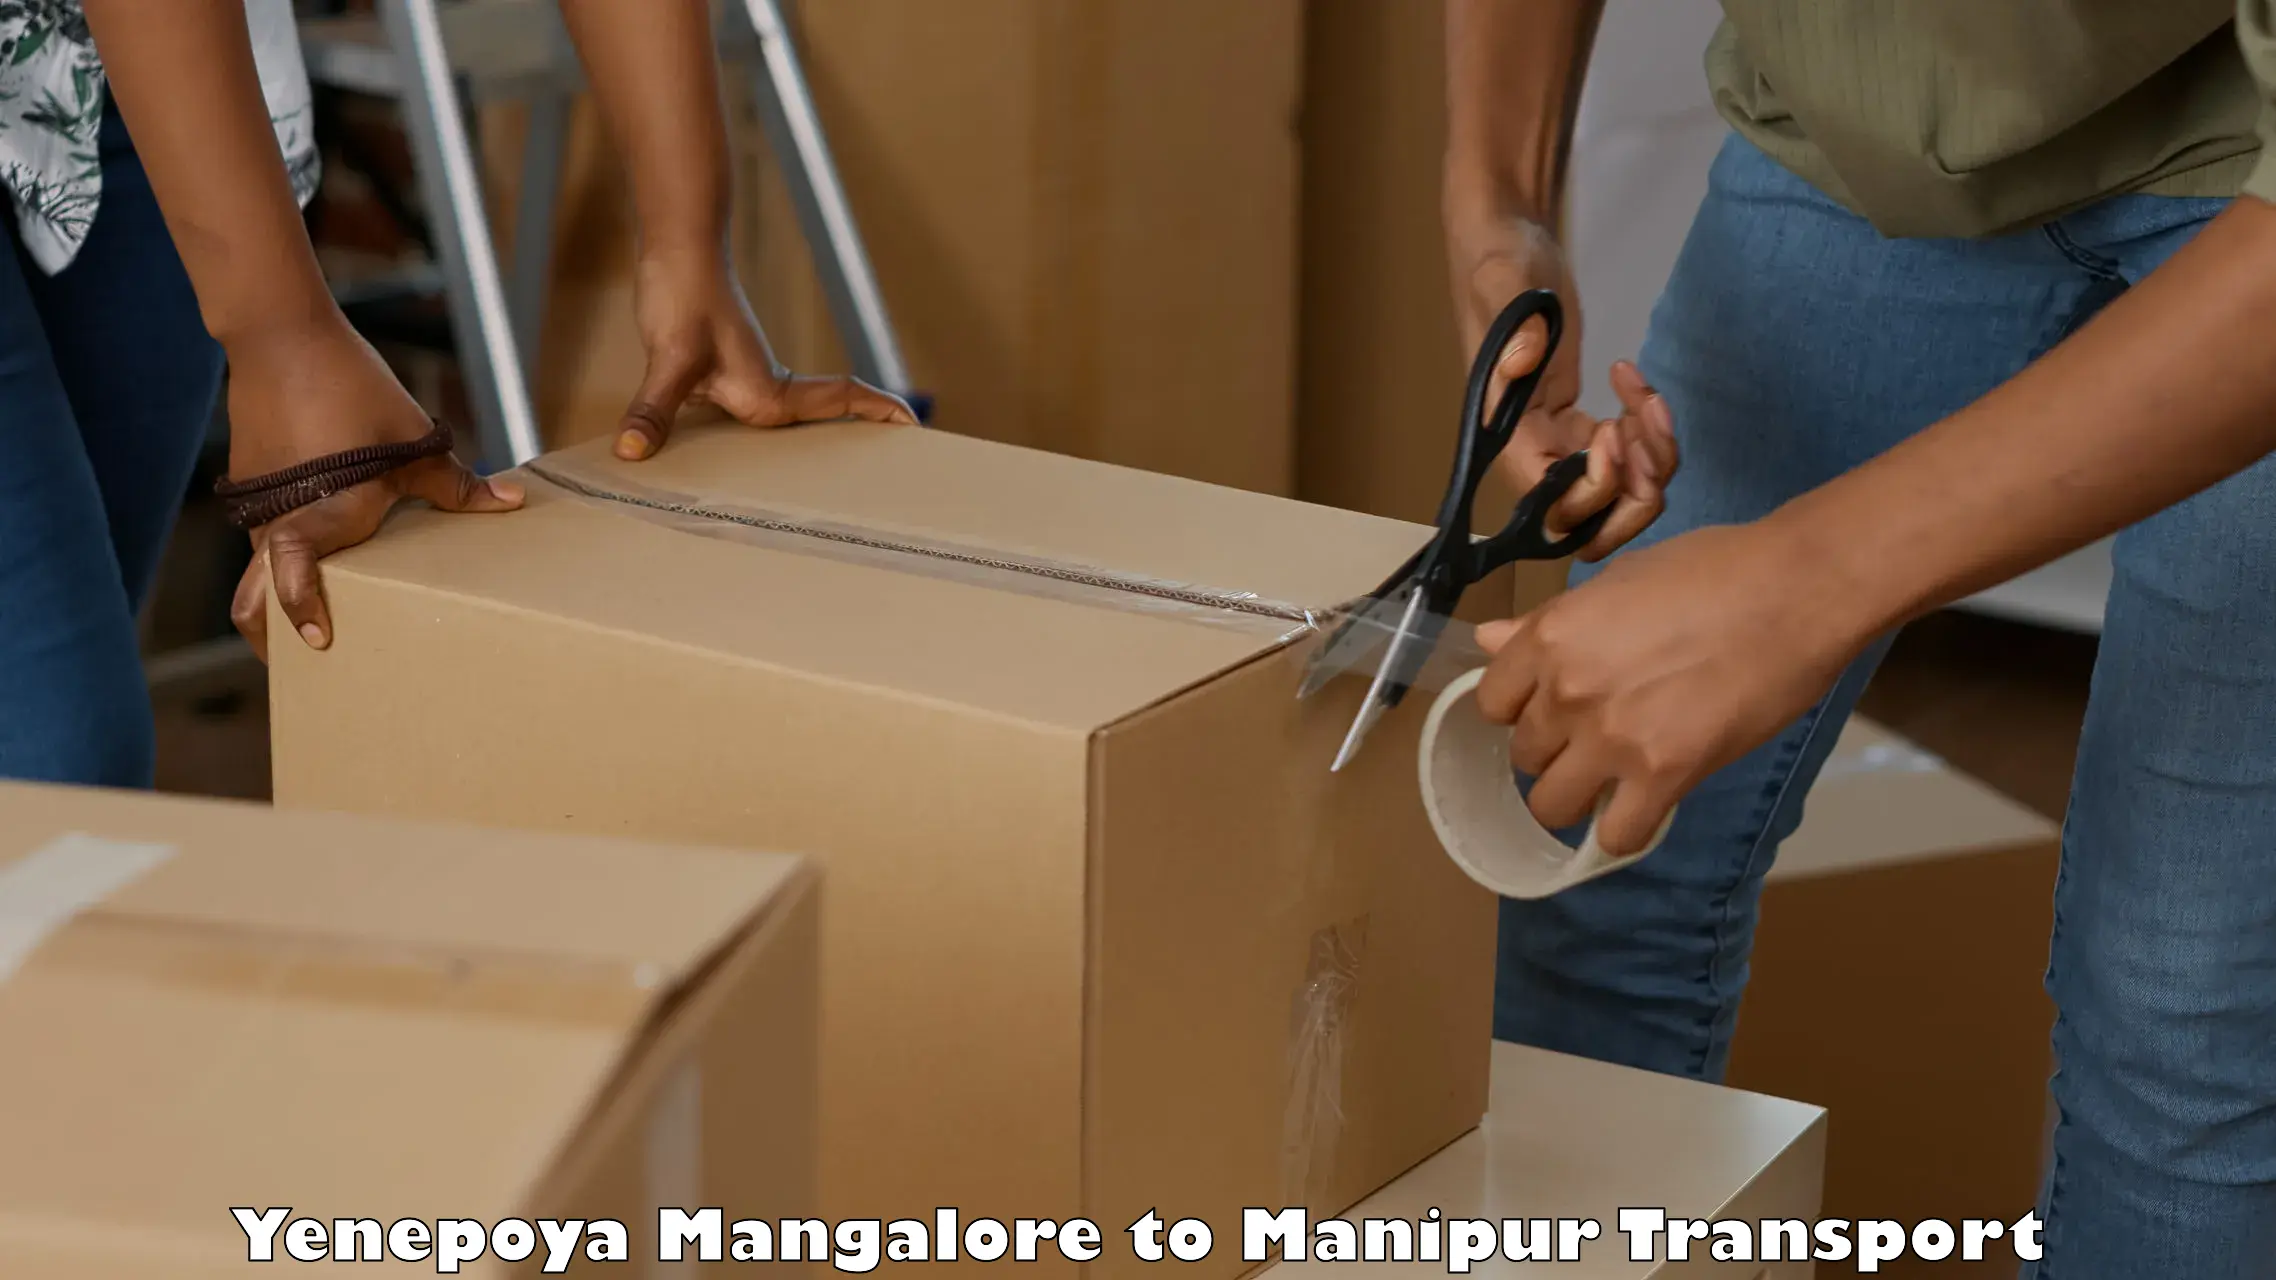 Cycle transportation service Yenepoya Mangalore to NIT Manipur